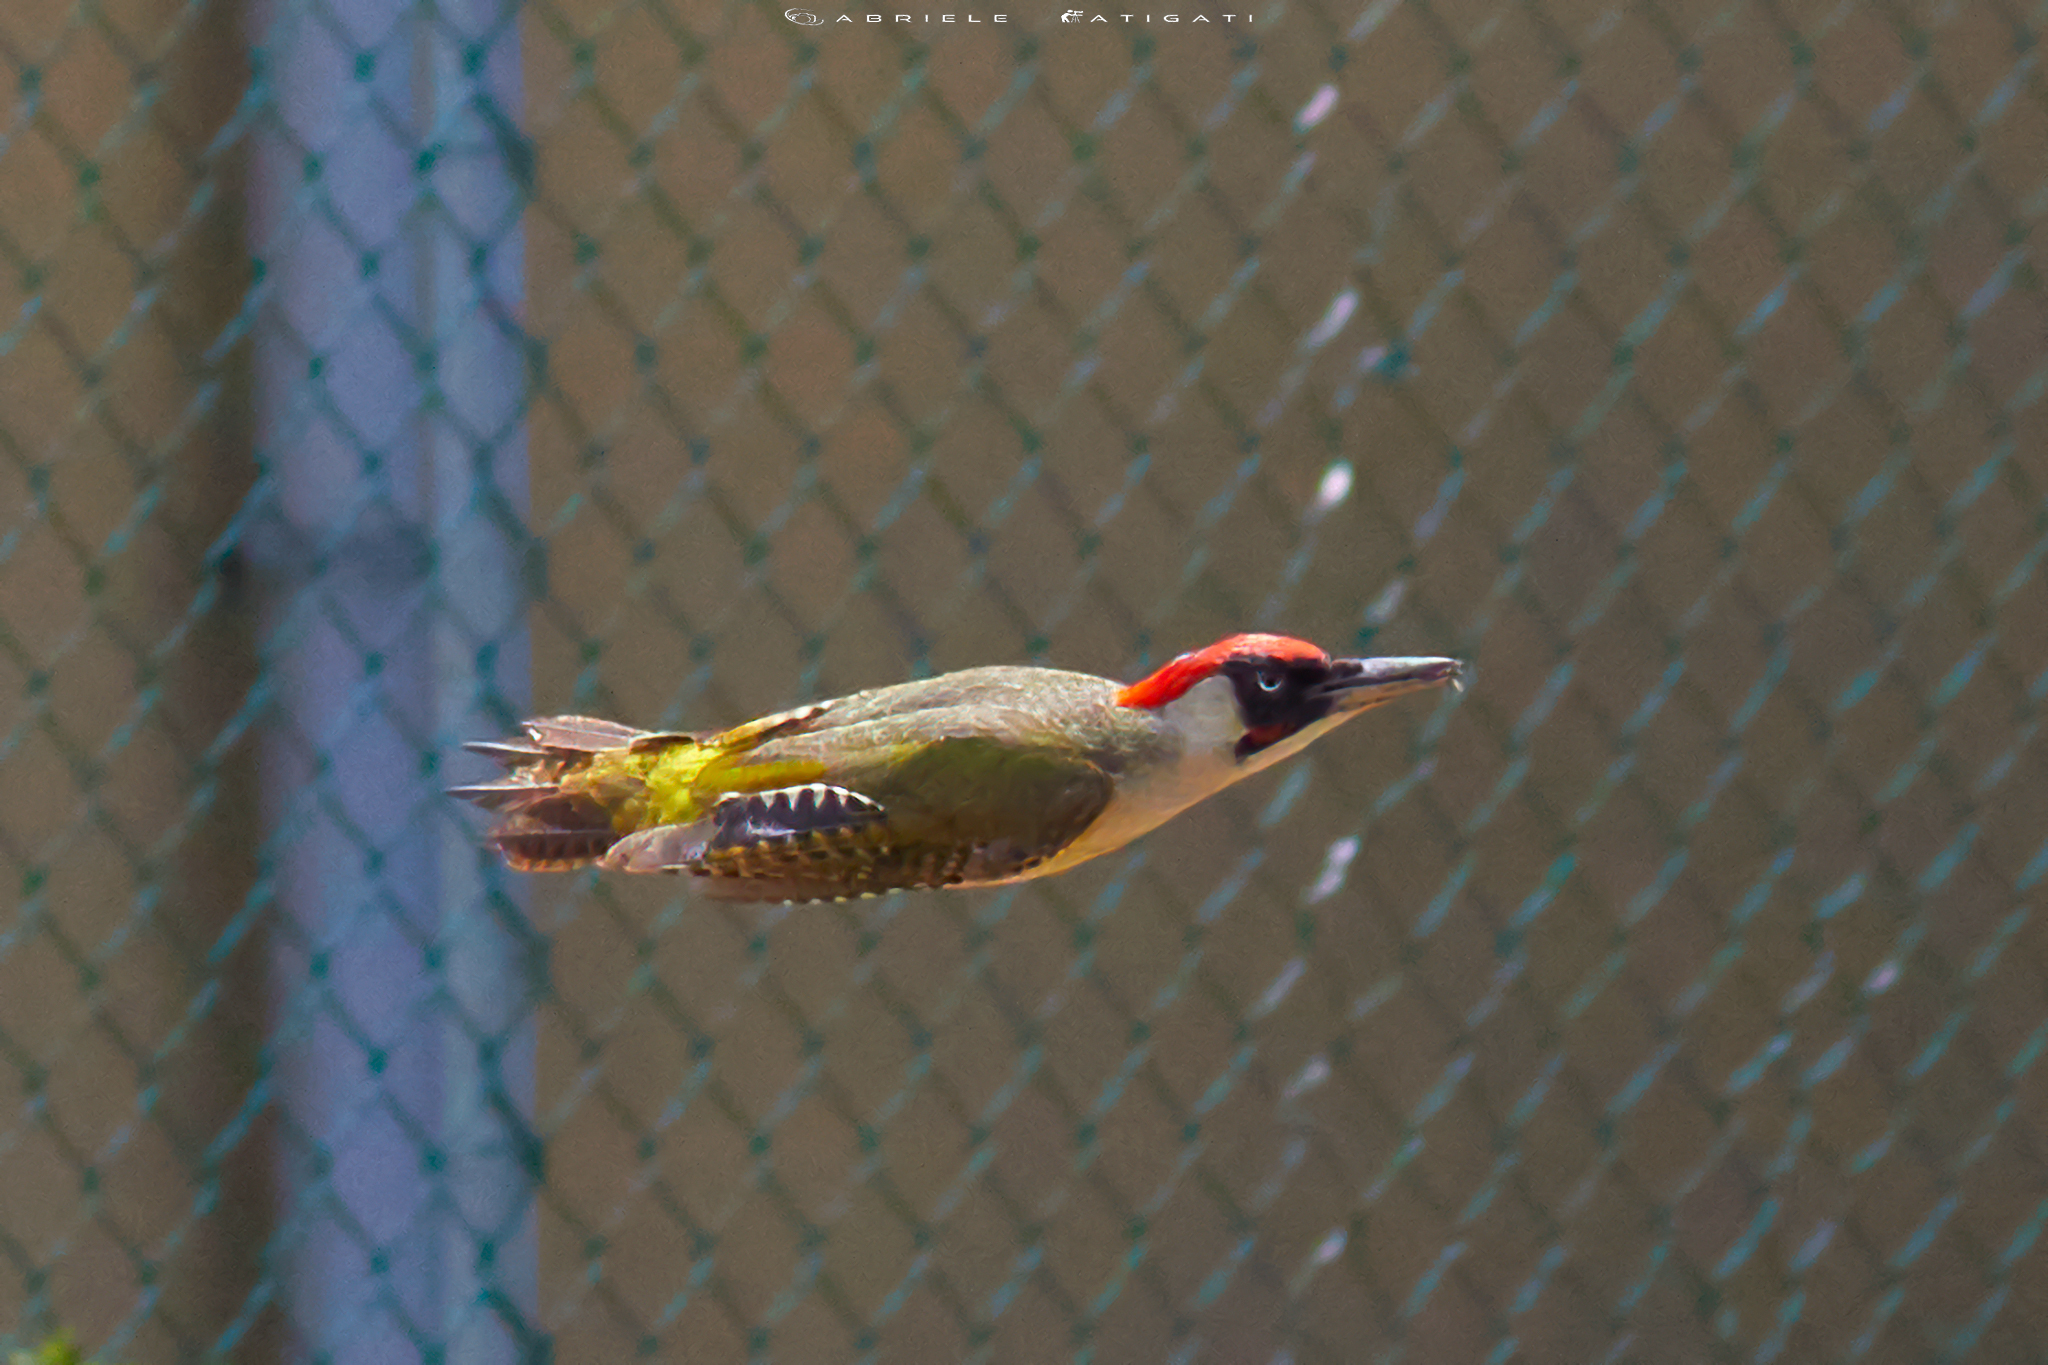 Spotted woodpecker in flight...